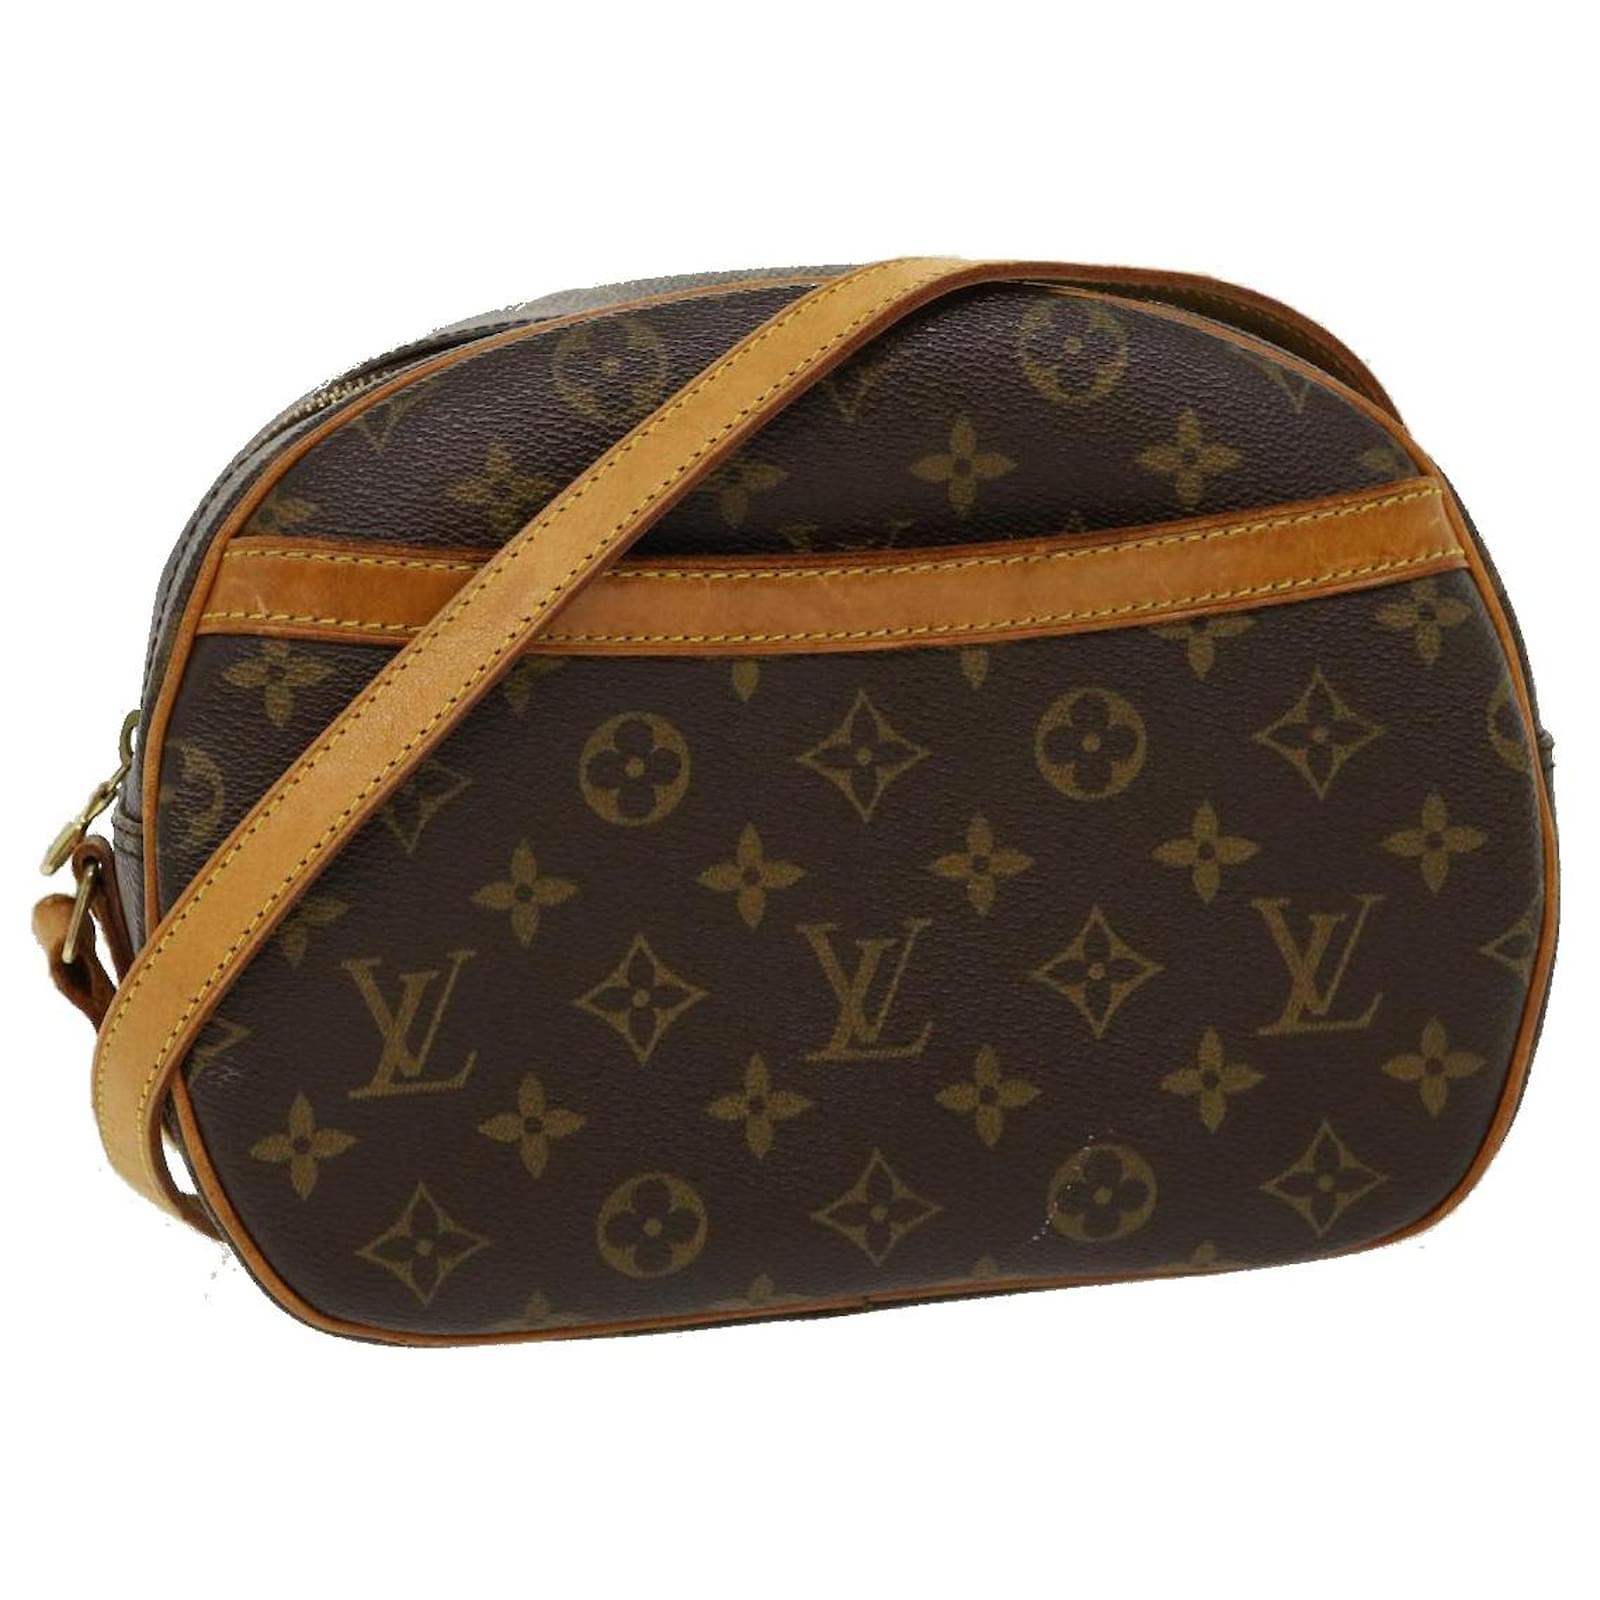 Louis Vuitton Blois Leather Handbag